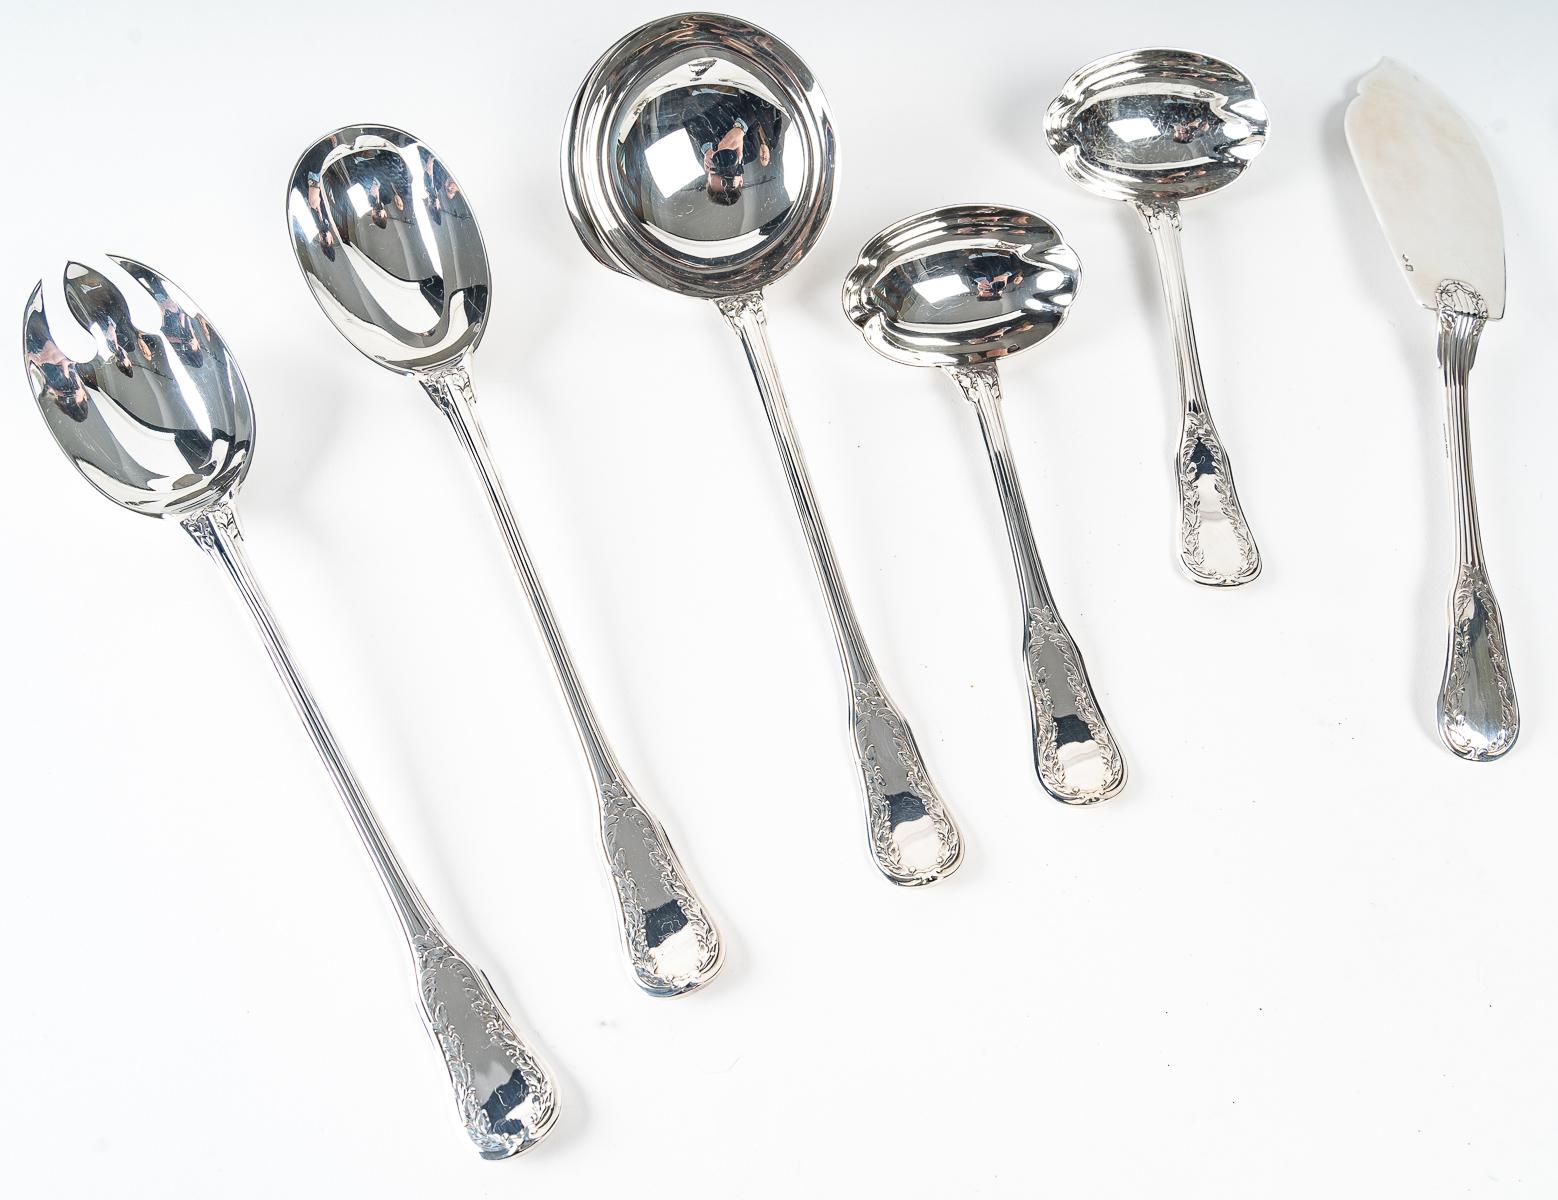 Puiforcat - twentieth silver cutlery set 153 pieces 